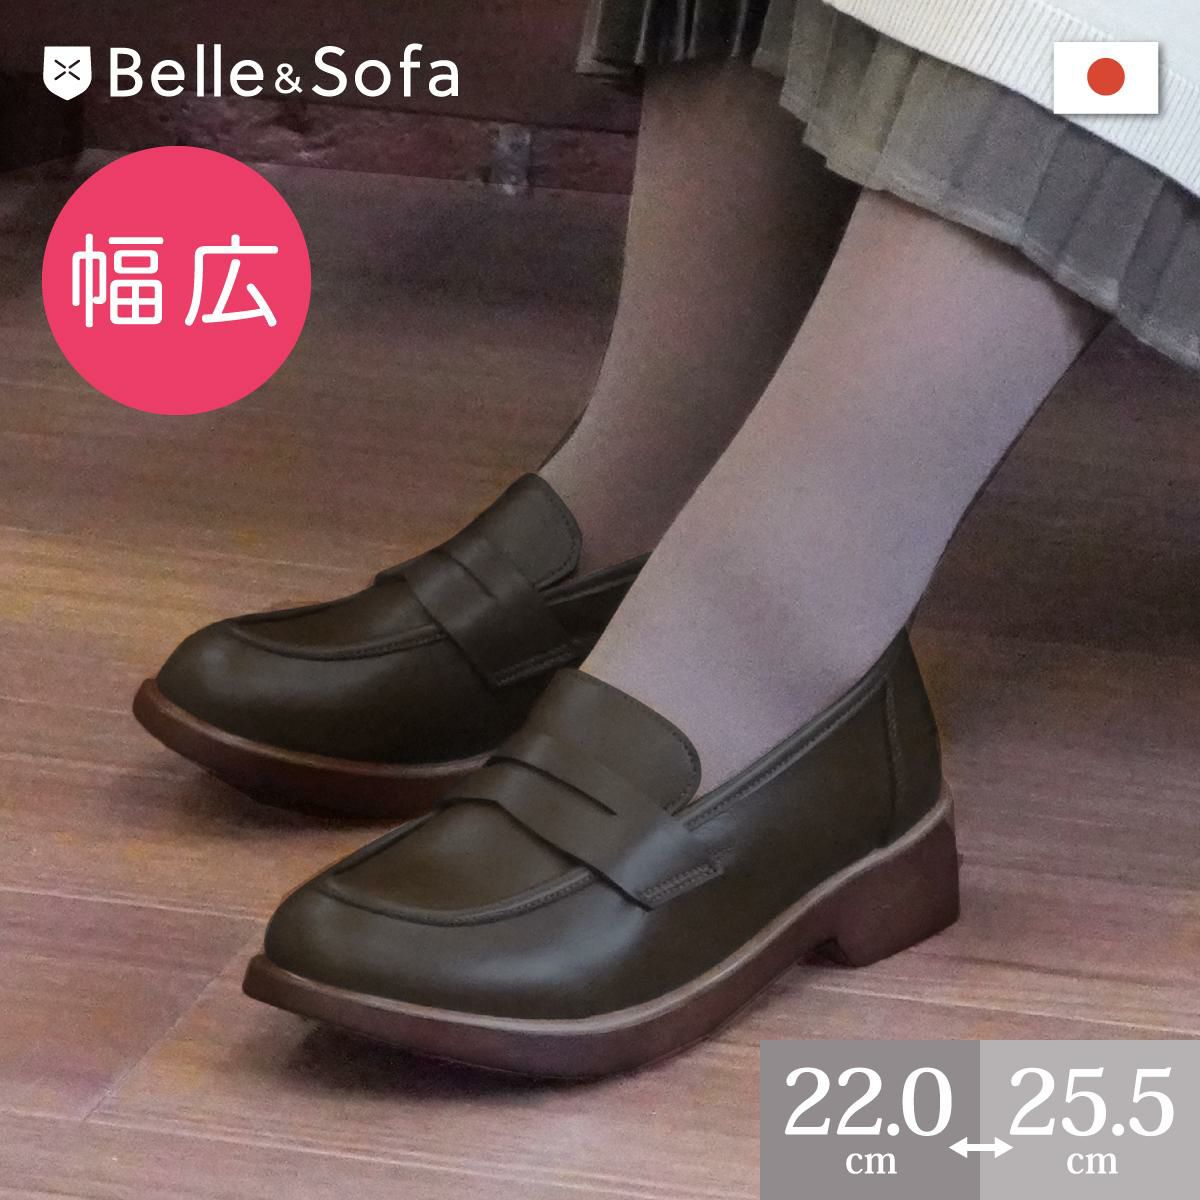 sofaシリーズ | やさしい靴工房 Belle & Sofa